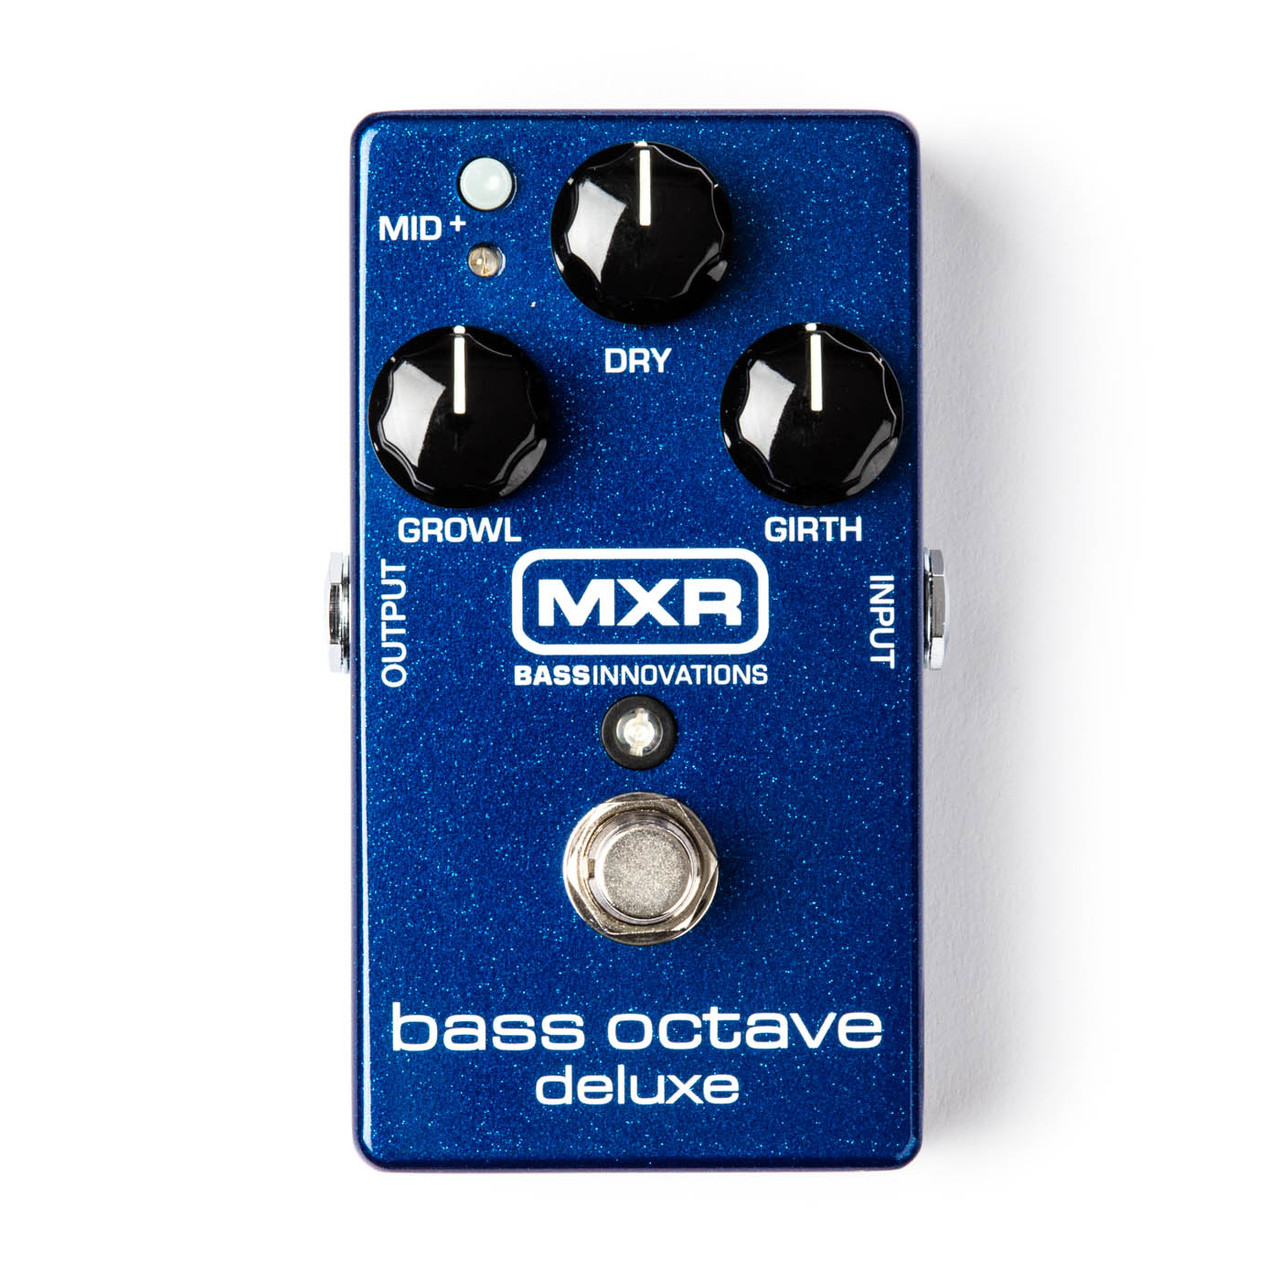 Процессоры эффектов и педали для гитары MXR M288 Bass Octave Deluxe звукосниматель ggp 01 для акустической гитары двойной звукосниматель пьезо микрофон 4 батарейки cr2032